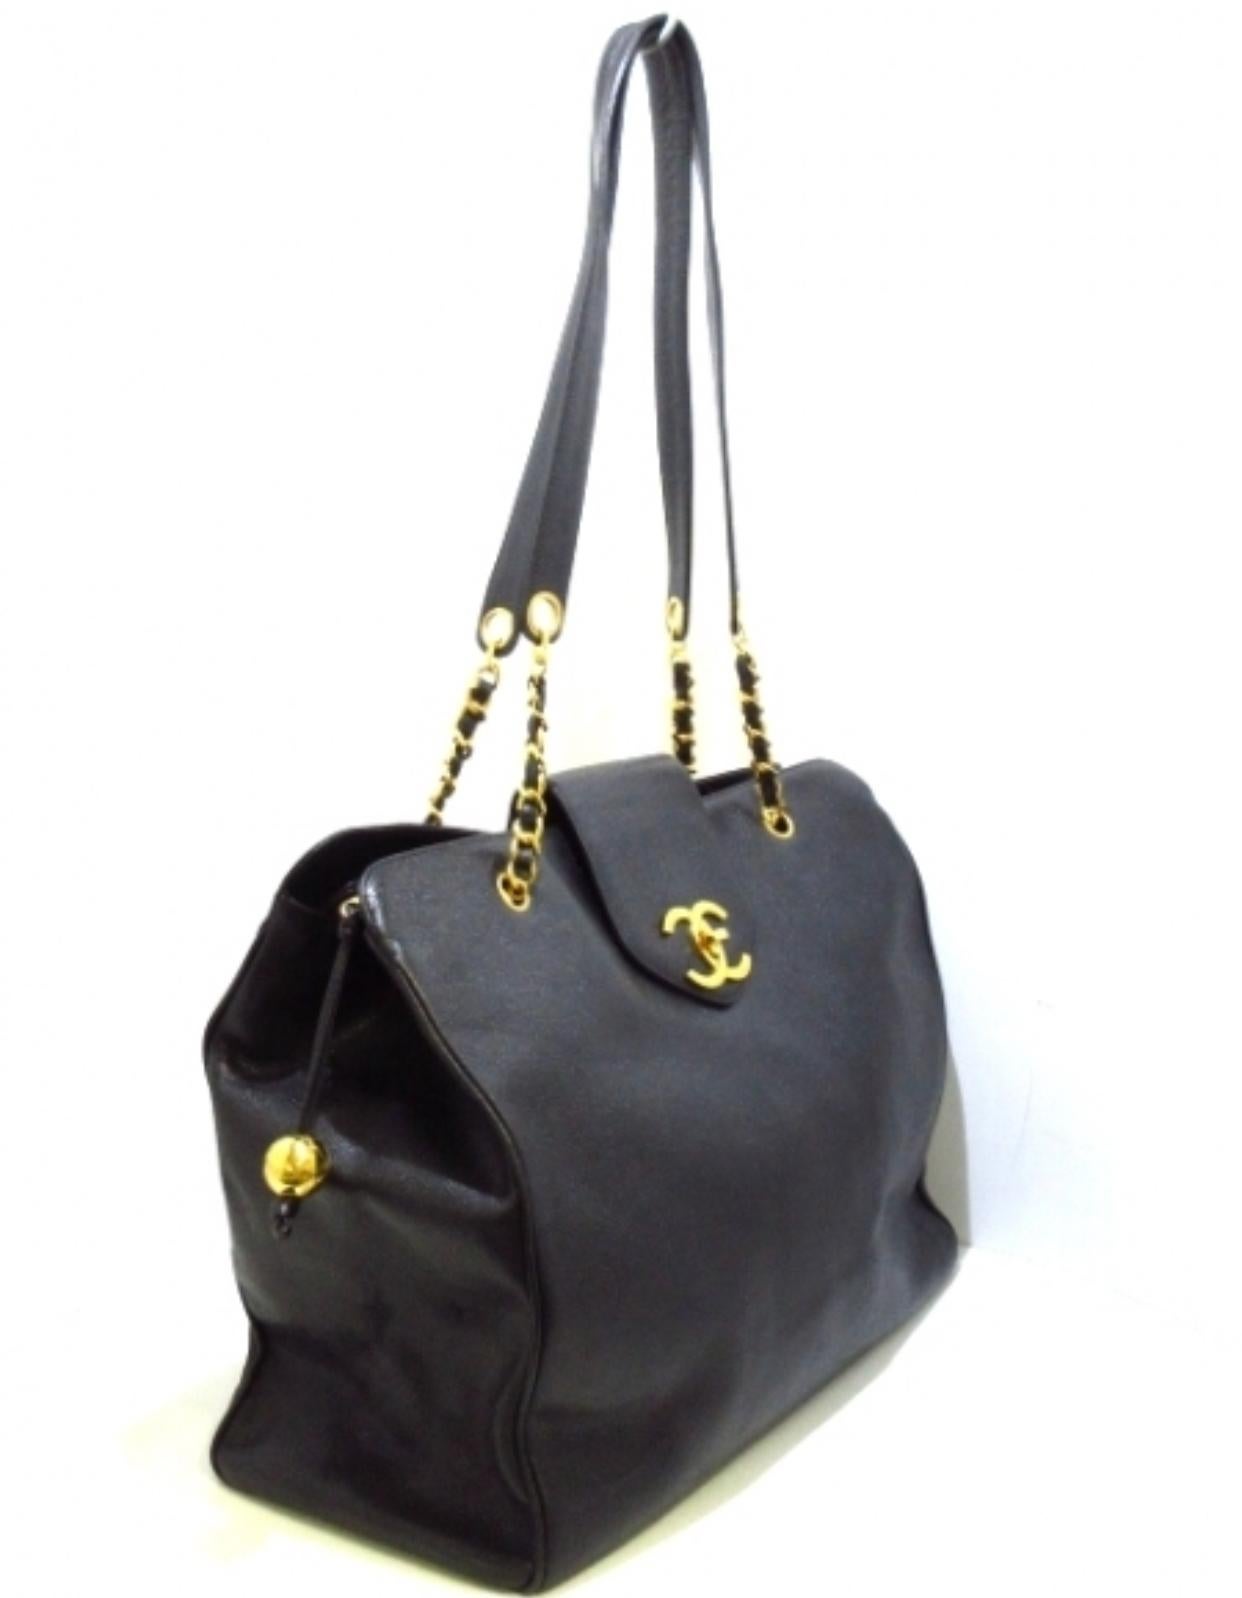 Vintage CHANEL black caviar leather Overnighter, Weekender bag, large chain bag. 4